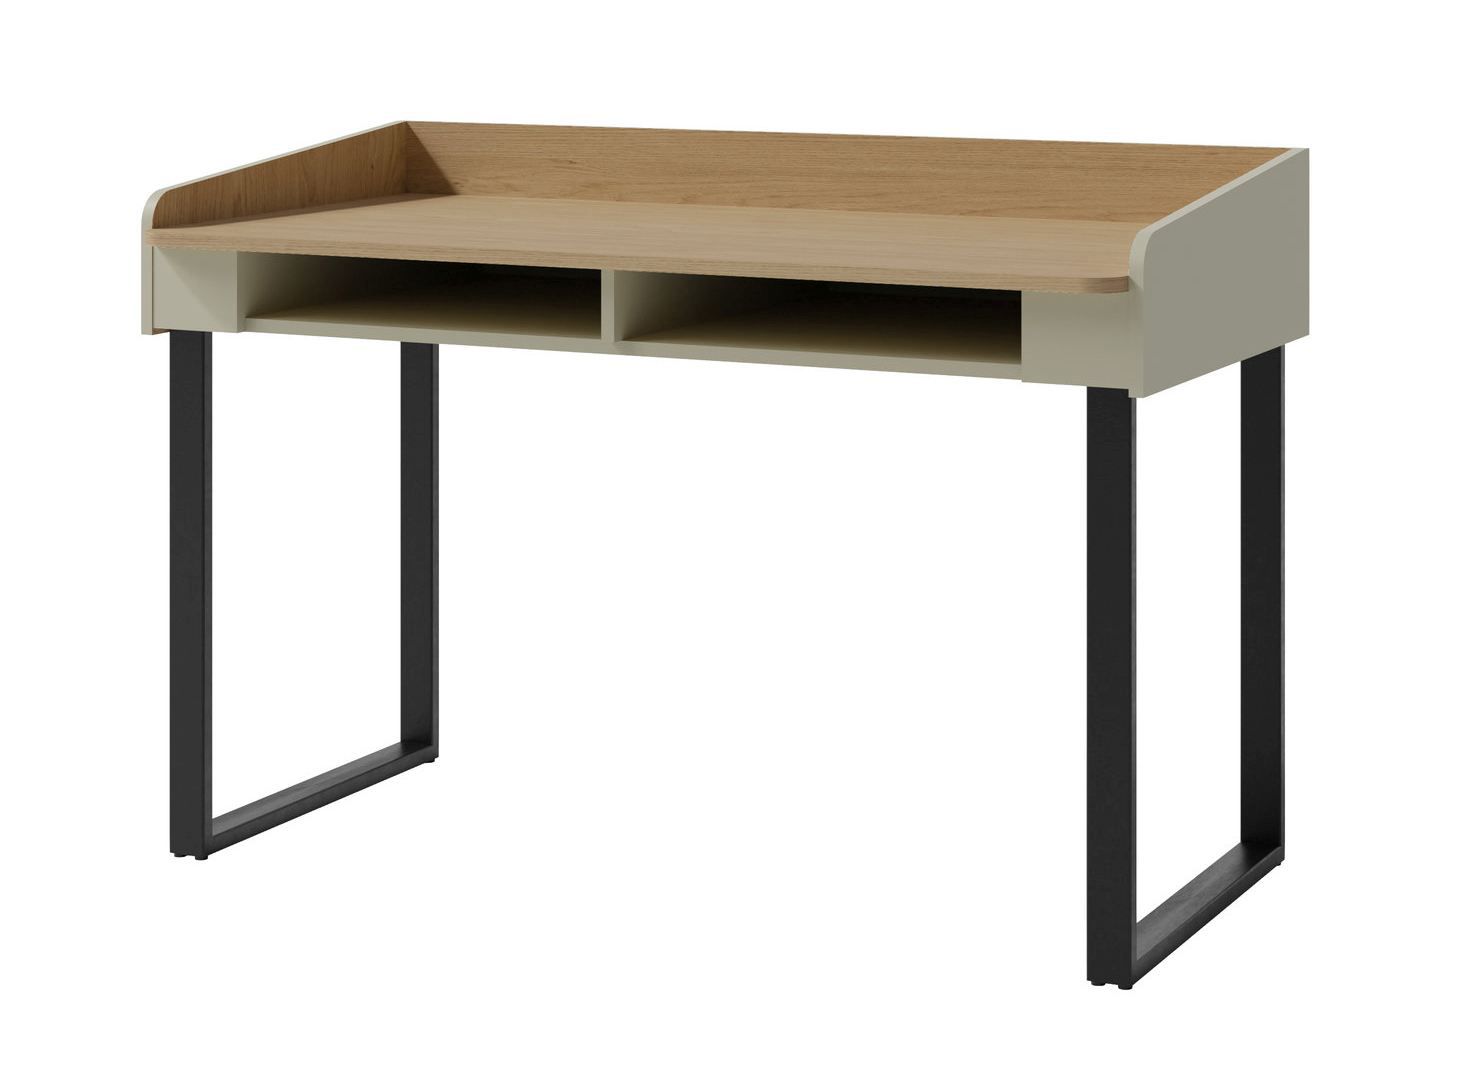 Schreibtisch Sampont 10, Mintgrün / Eiche dunkel, 83 x 125 x 65 cm, mit 2 praktischen Fächern, ABS-Kanten, viel Ablagefläche, einfache und rasche Montage